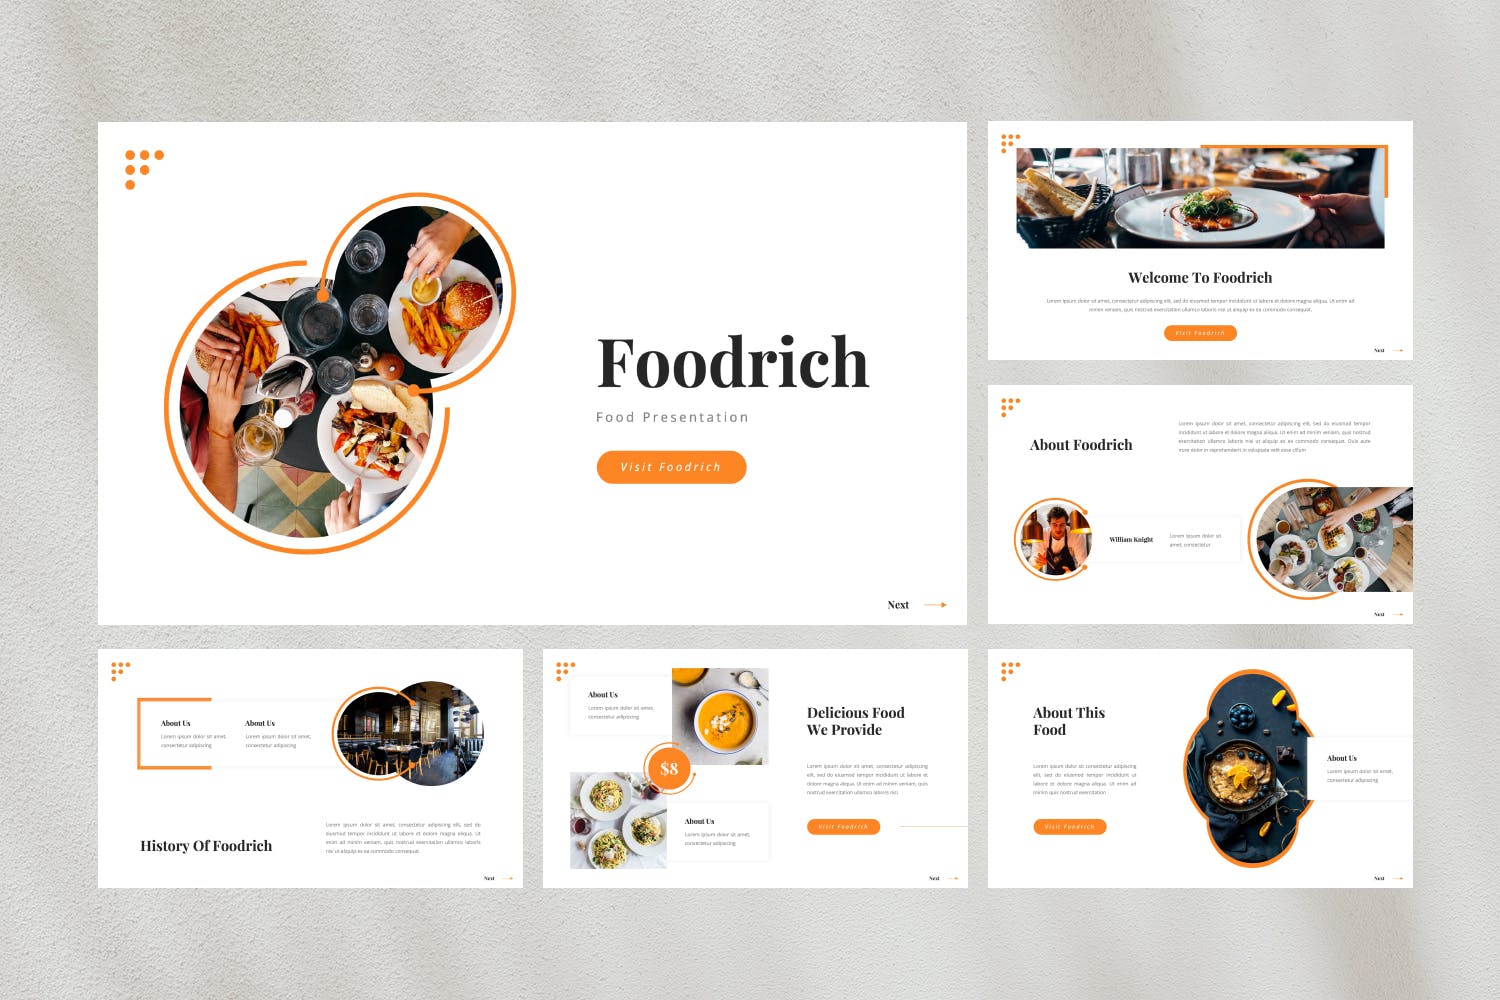 餐厅美食演示PPT模板 Foodrich – Food PowerPoint Template 幻灯图表 第2张